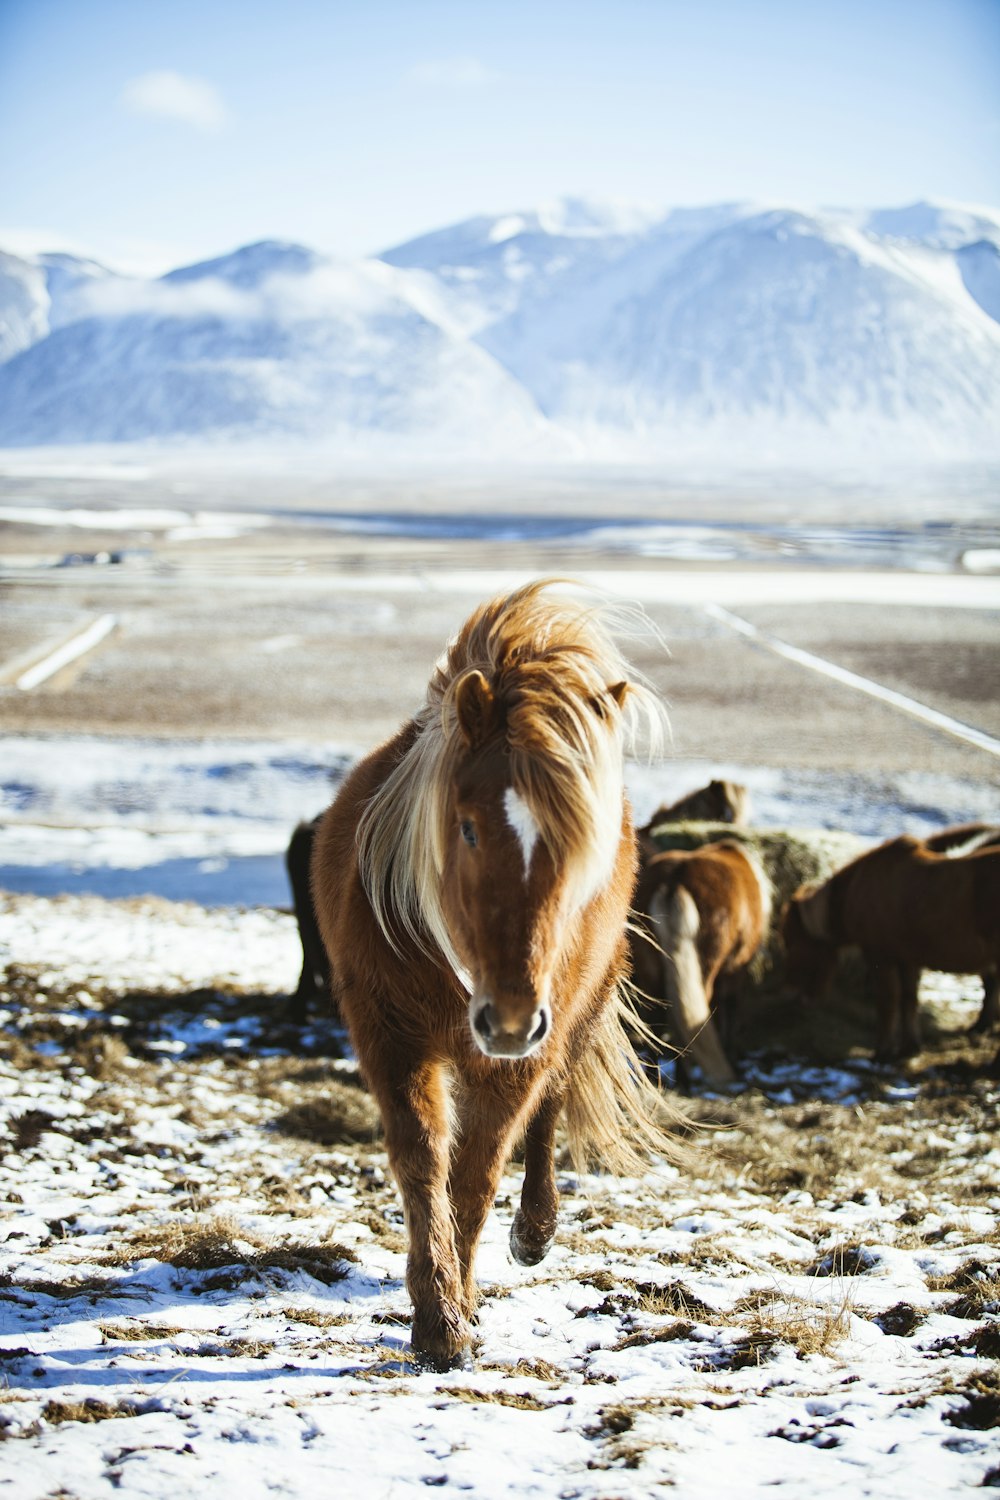 Photographie en gros plan d’un cheval brun marchant devant une montagne couverte de glace